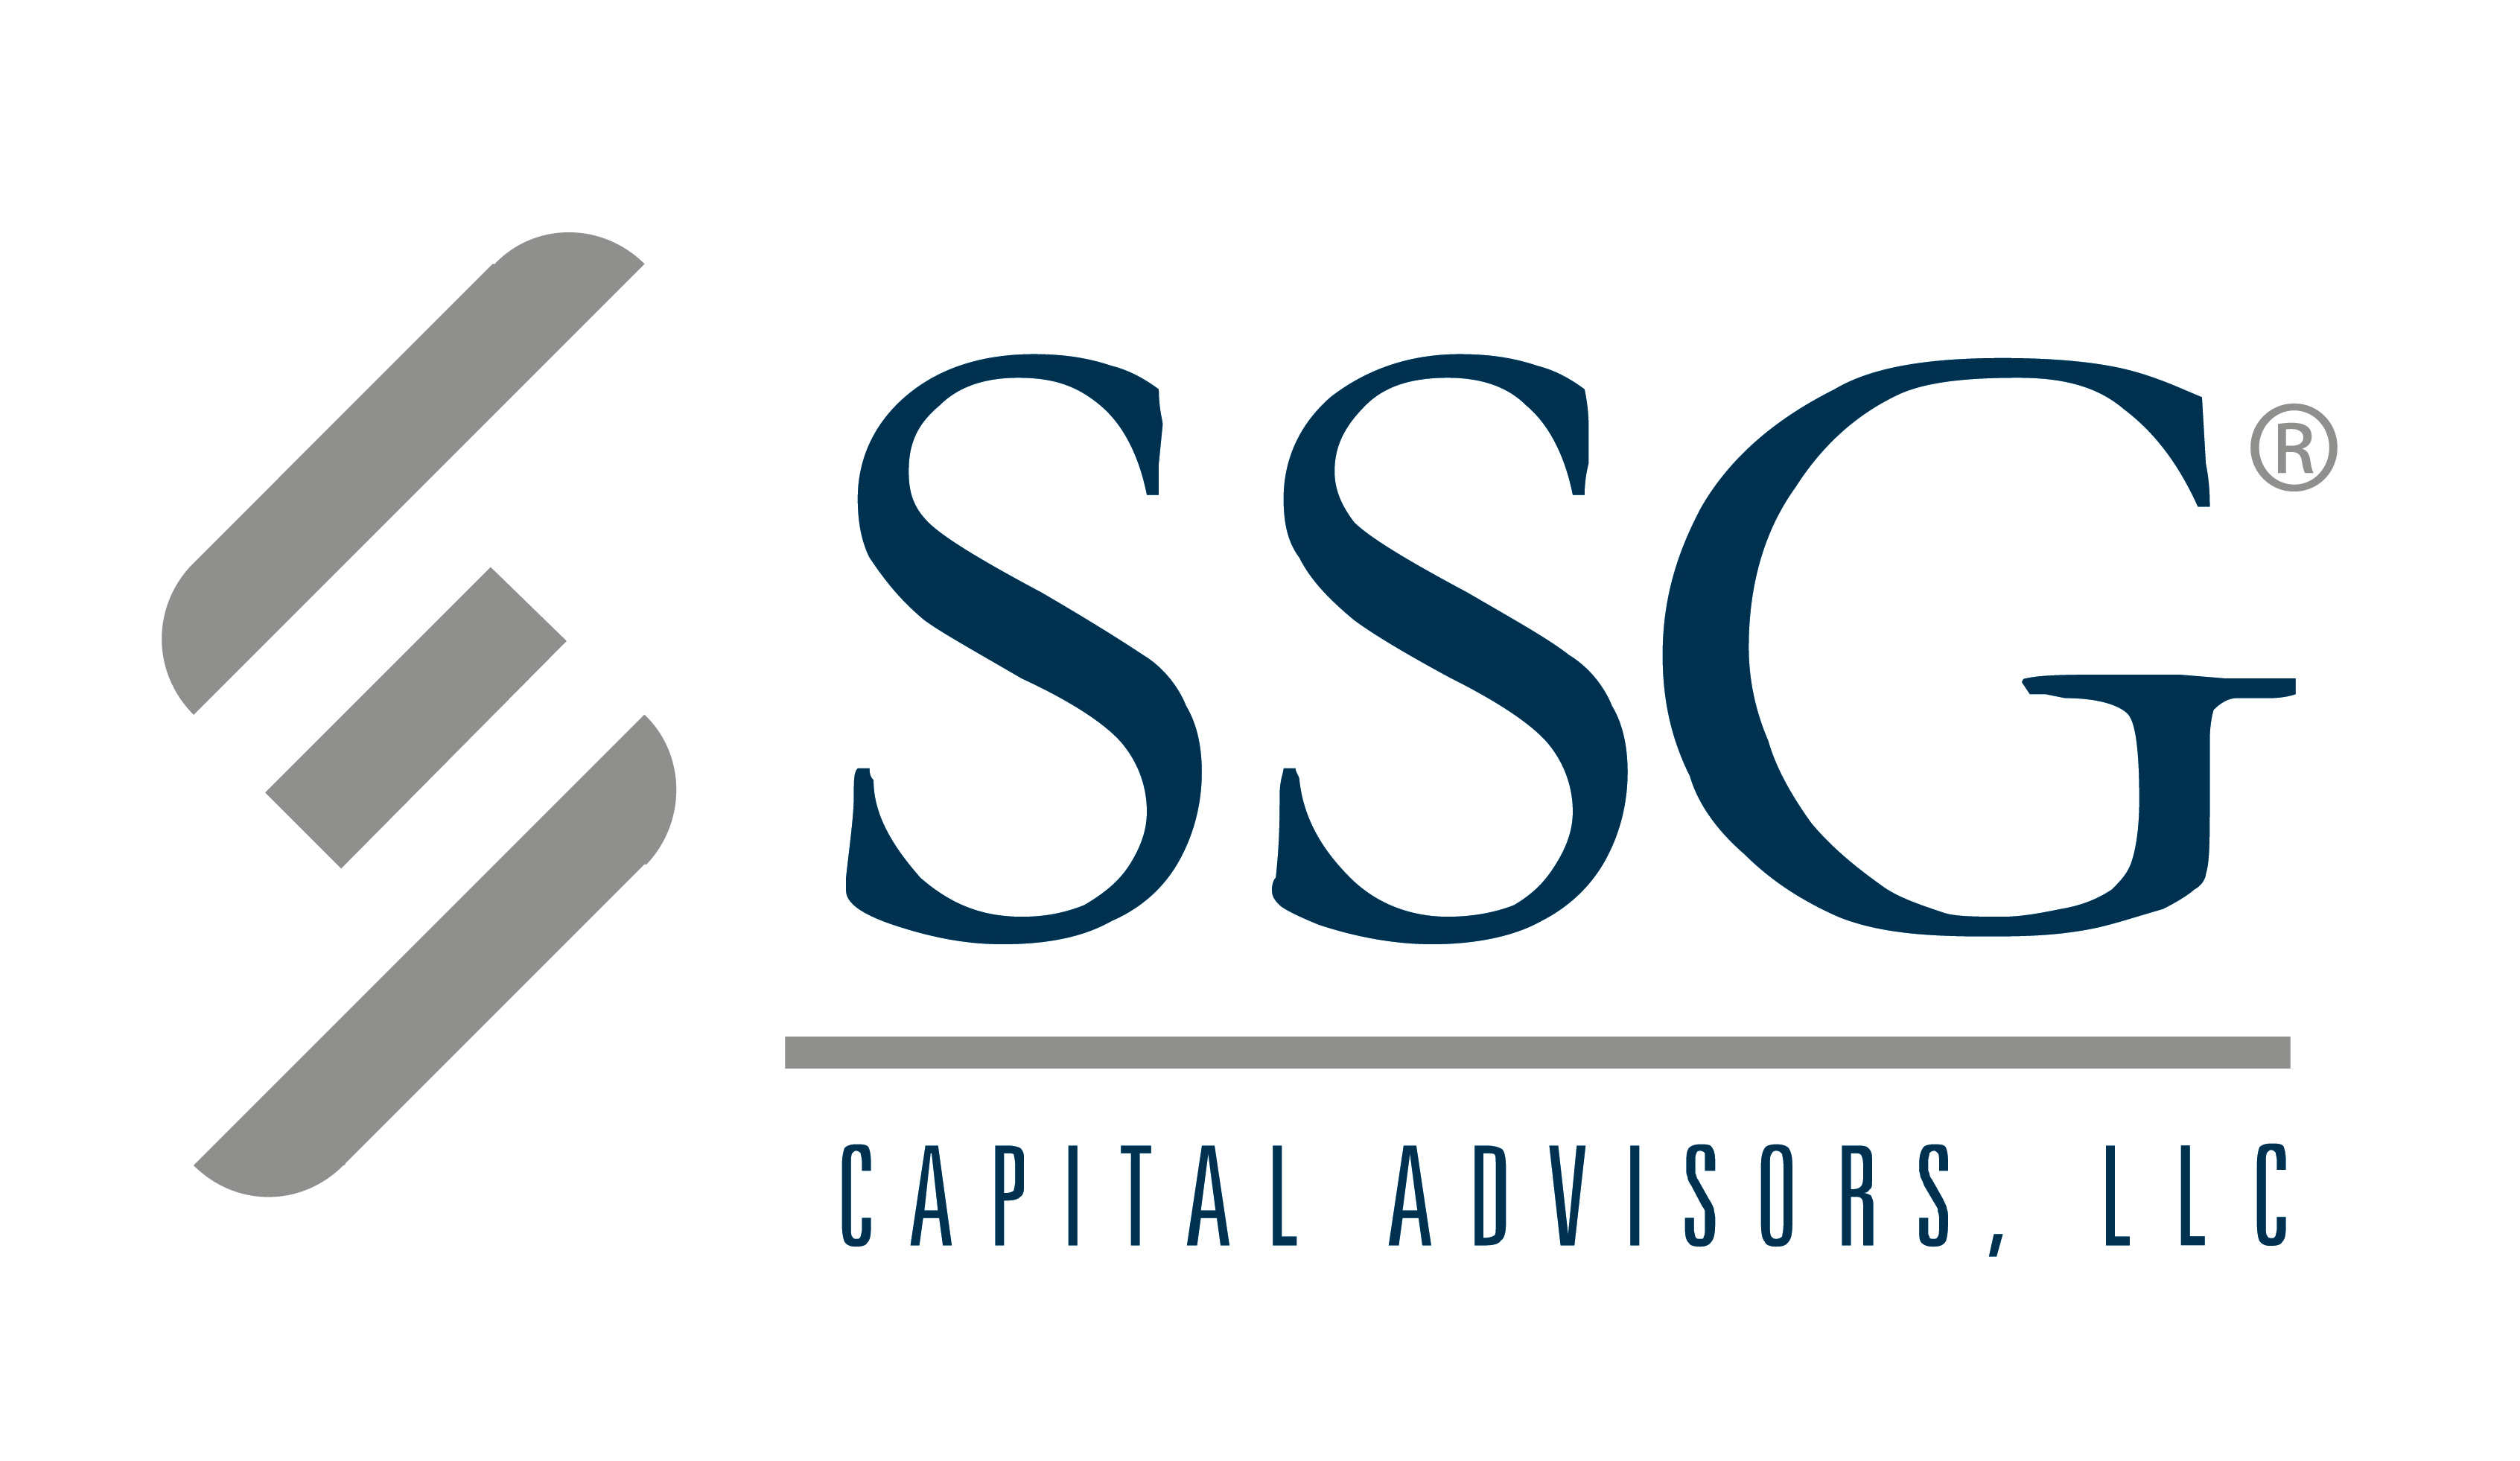 Welcome to SSG Capital Advisors, LLC